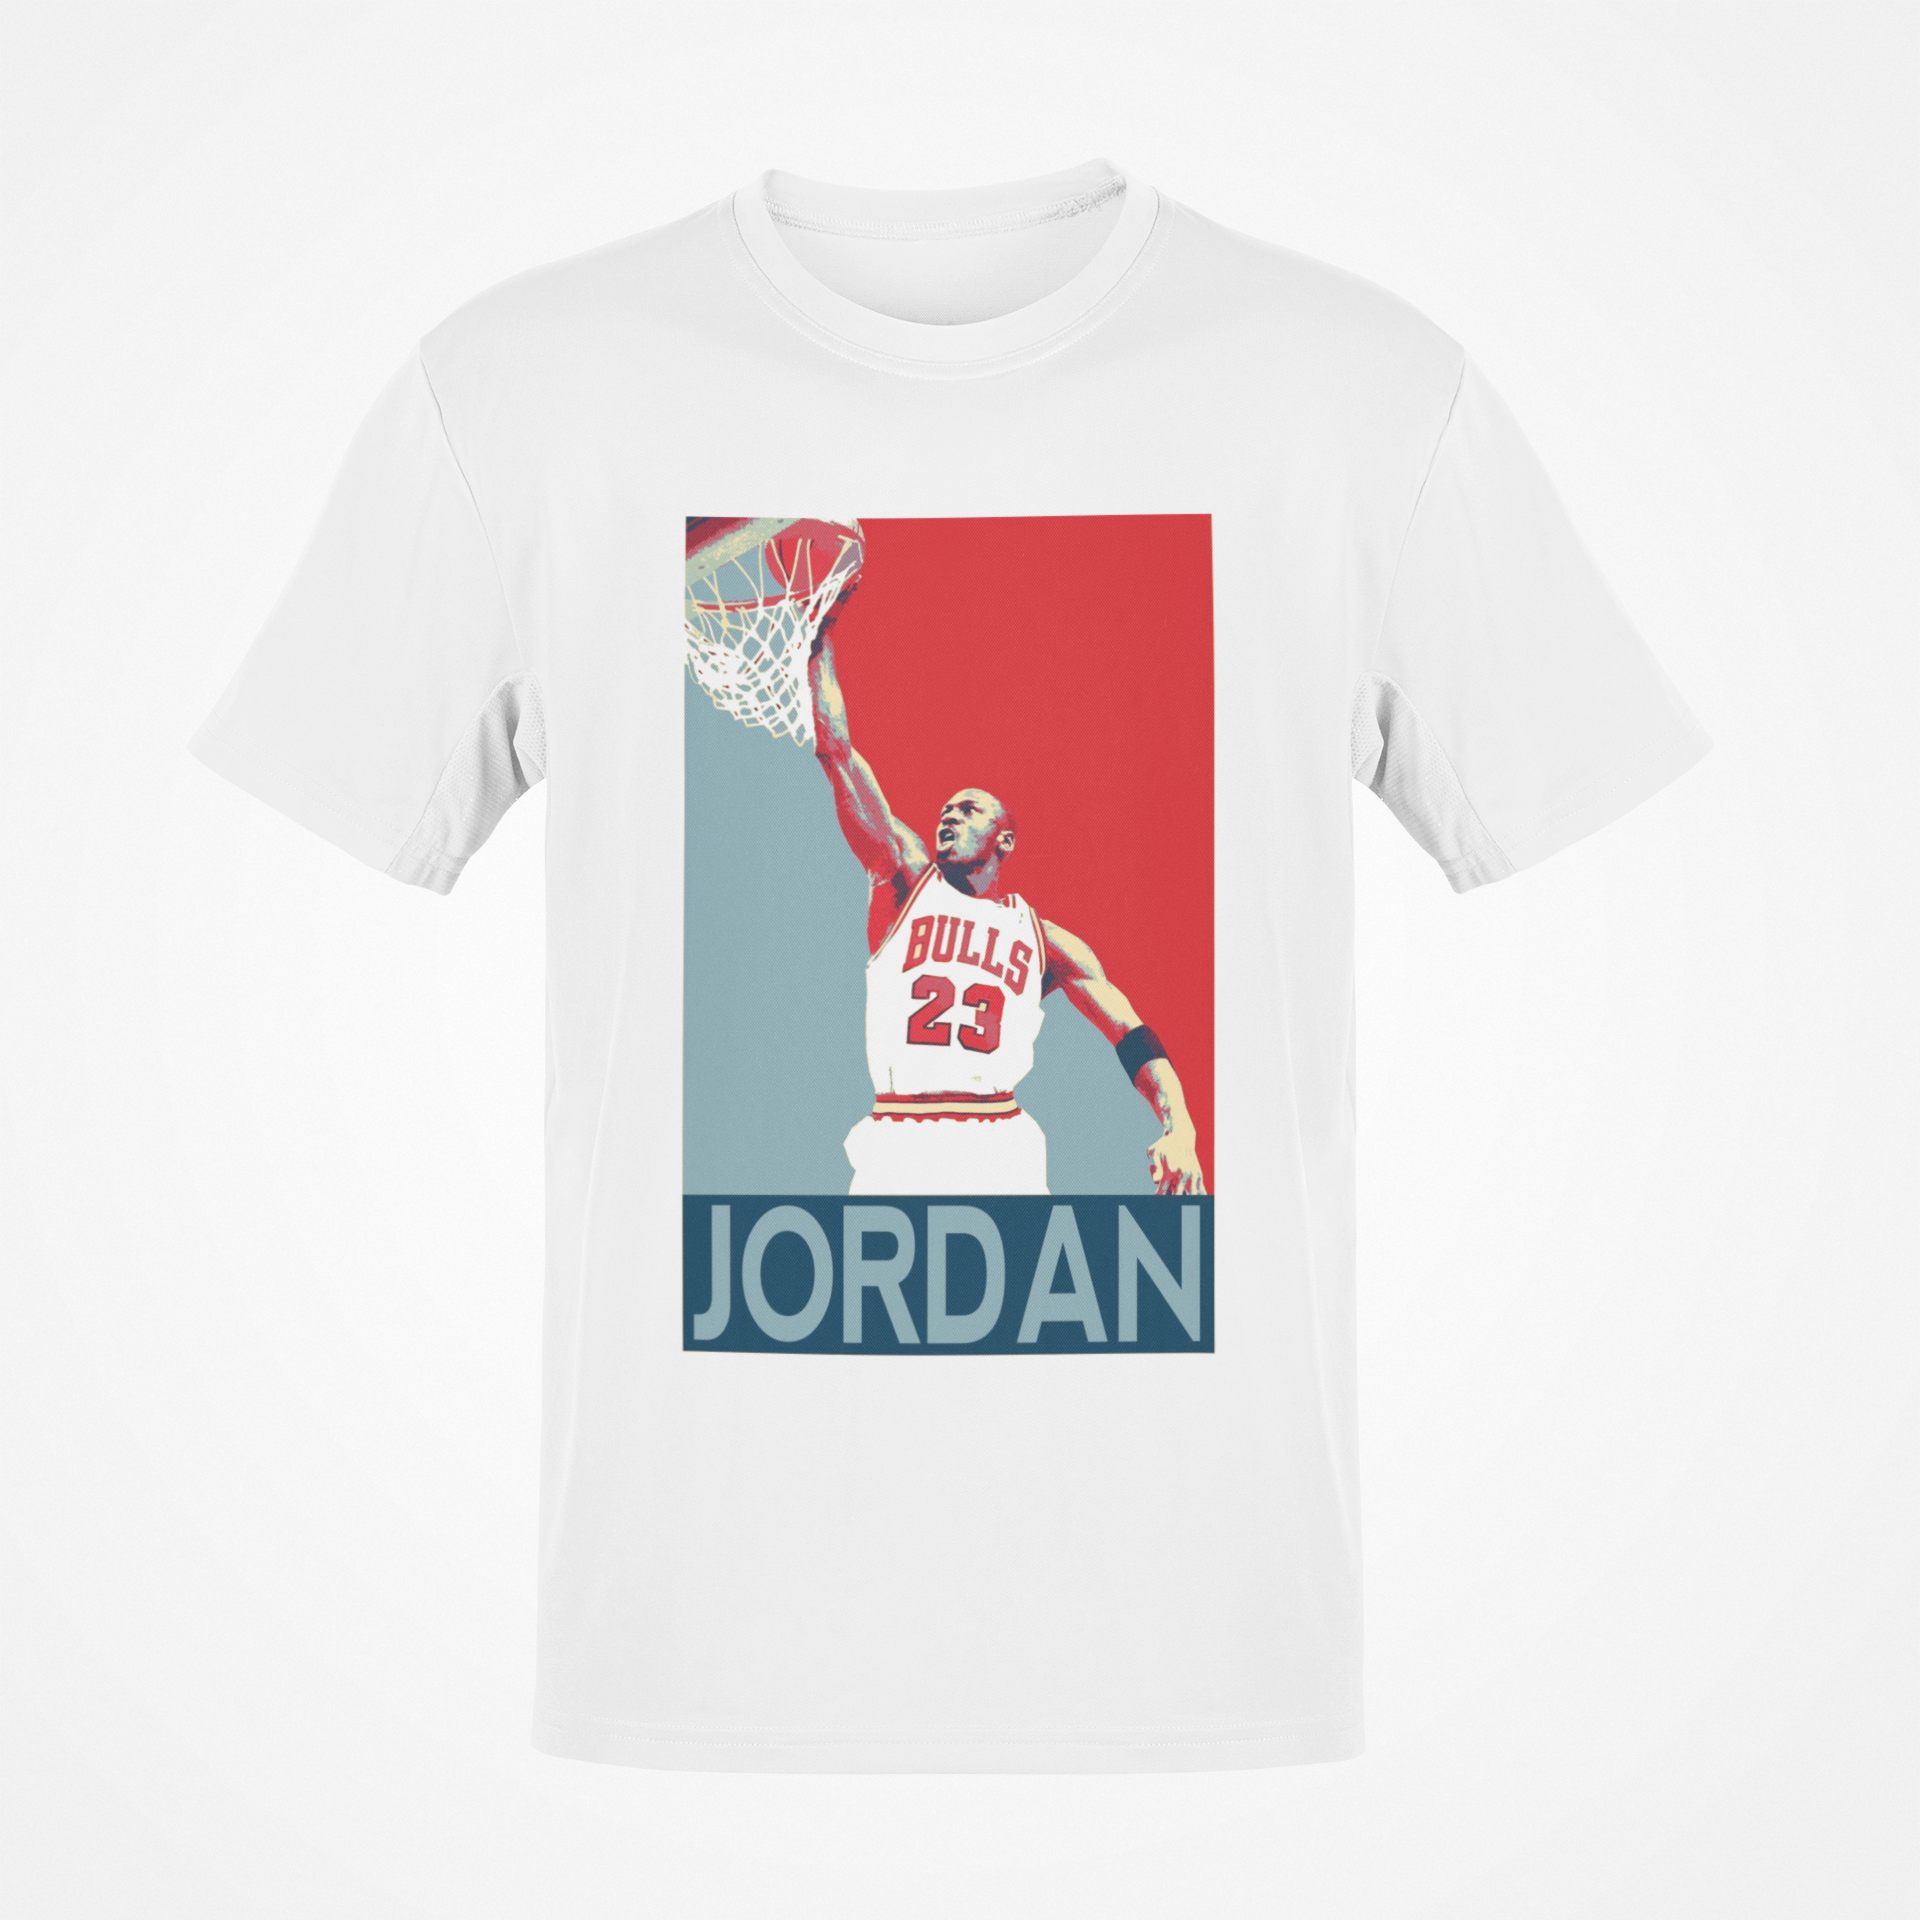 Michael Jordan The Jordan Graphic – Crumpets and Tea